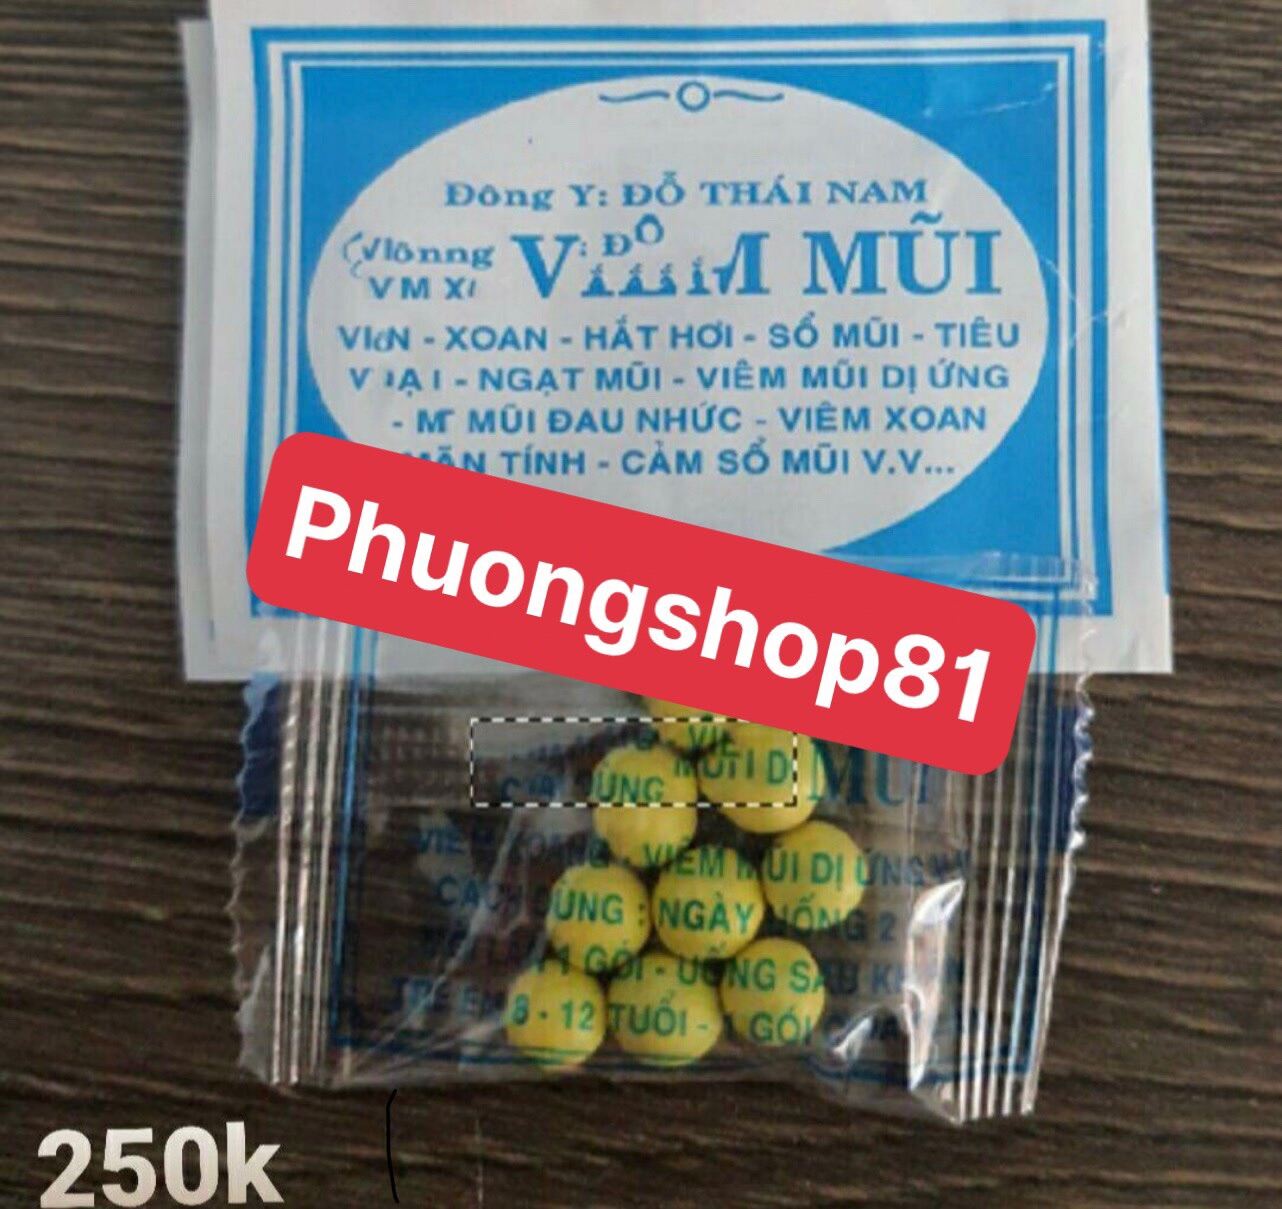 [Phuongshop81] 50 gói viêm mũi Viên đỗ thái nam nhập khẩu